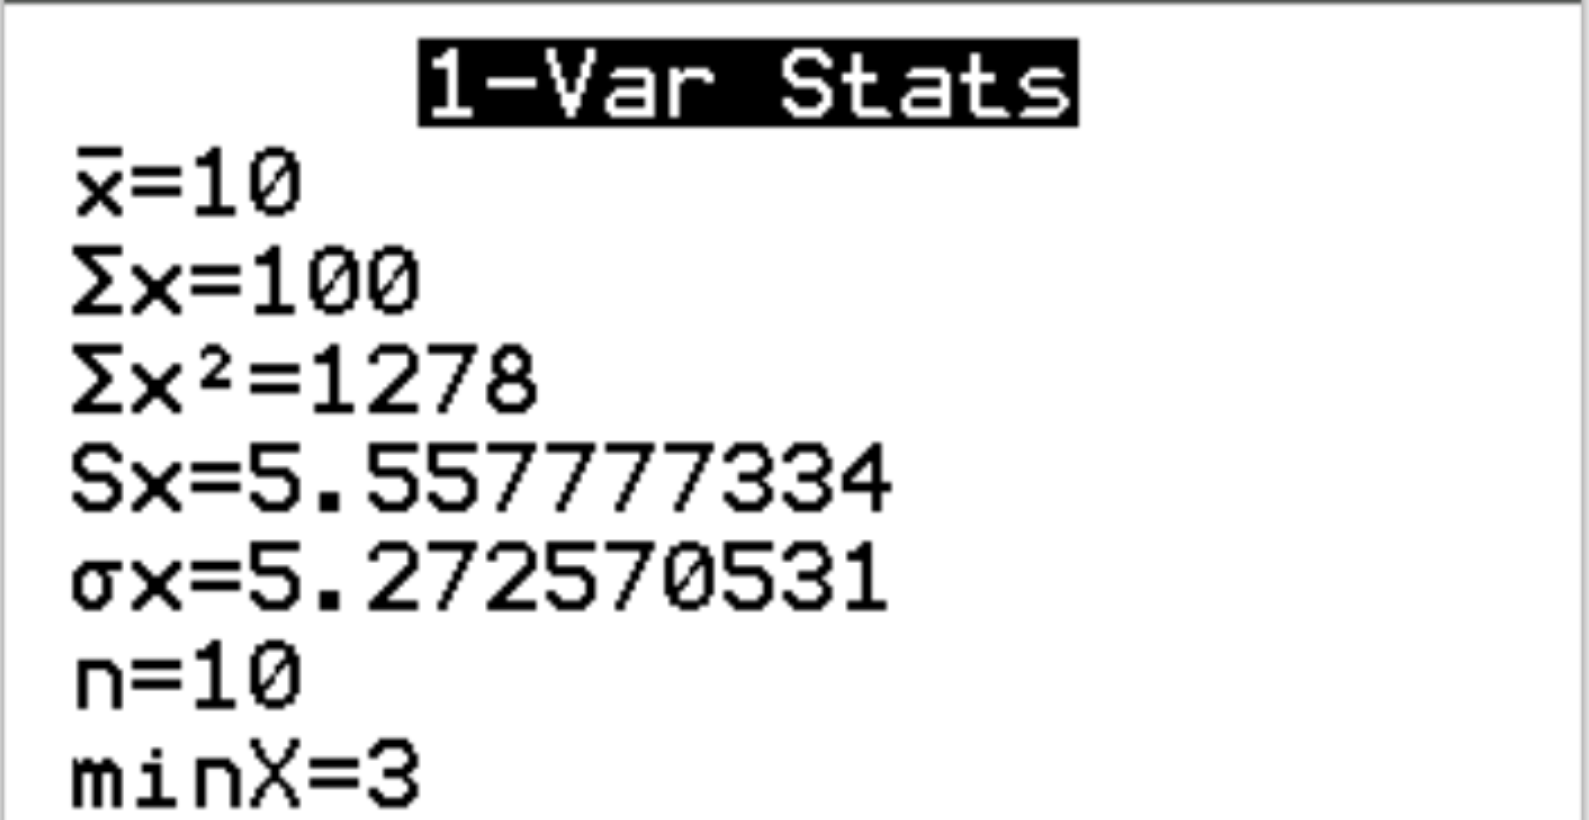 Uitvoeren van 1-Var-statistieken op een TI-84-rekenmachine